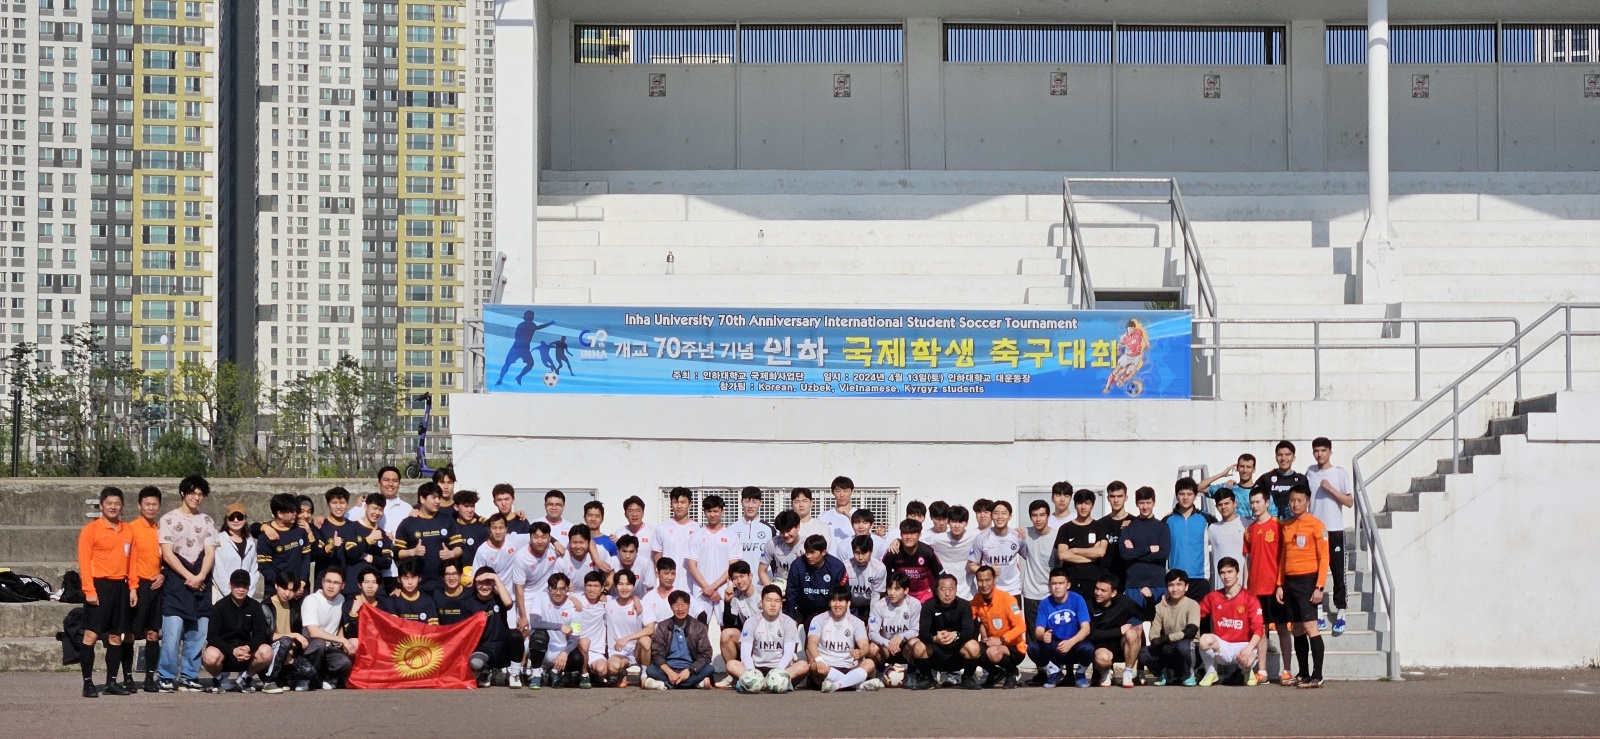 建校70周年纪念国际学生足球大赛圆满结束 image